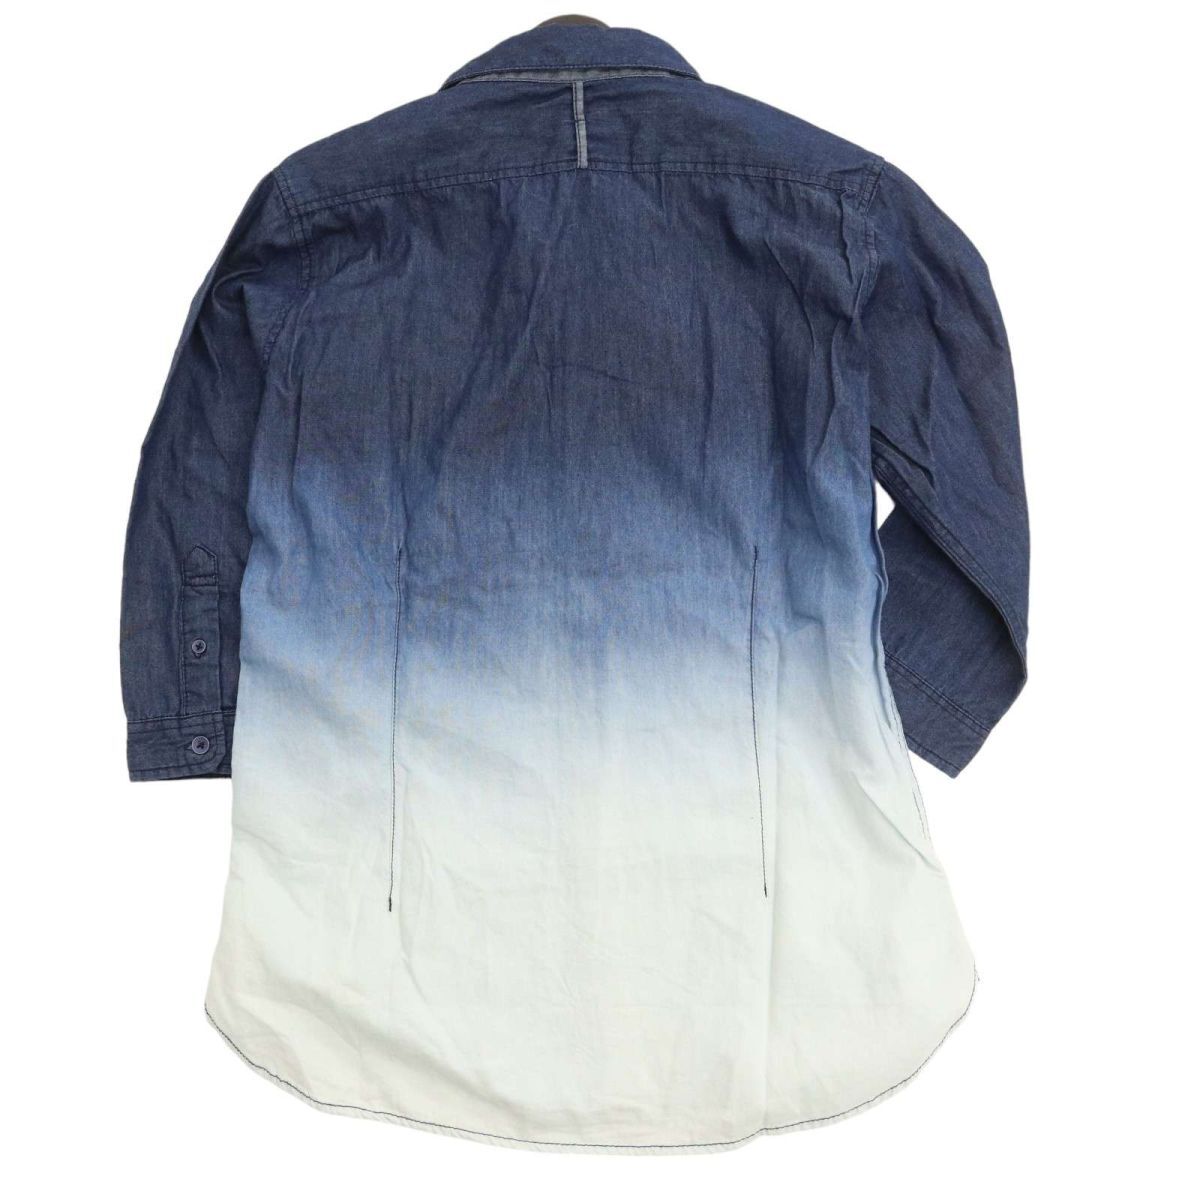 semantic designse man tik дизайн весна лето 7 минут рукав градация * 2 -слойный карман дизайн рубашка Sz.M мужской C4T01474_2#A